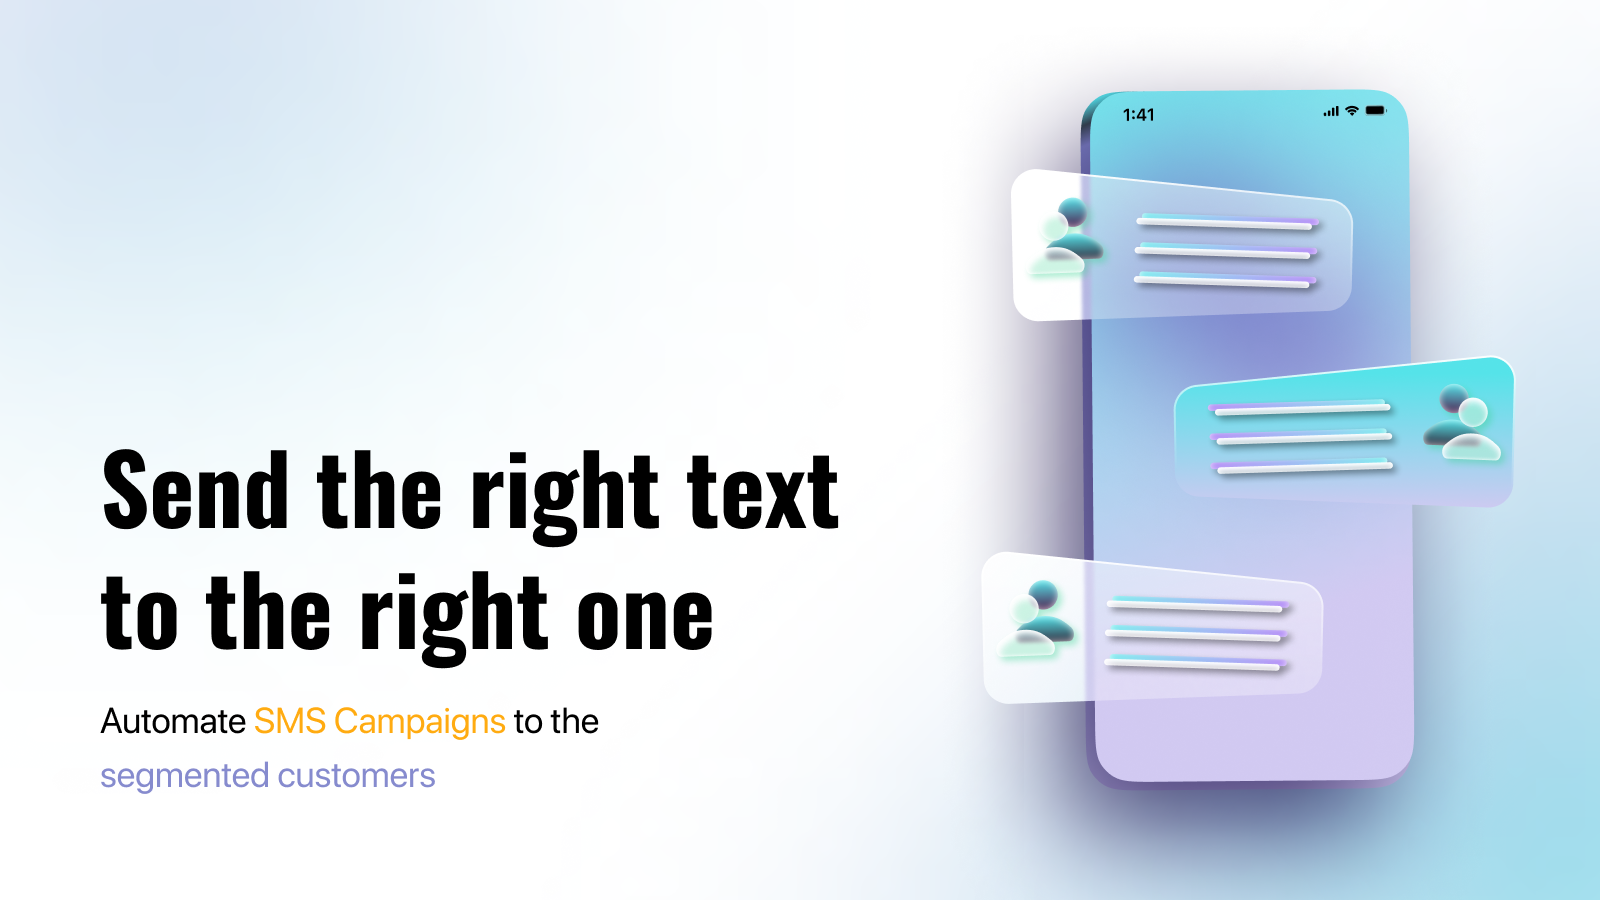 gesegmenteerde klanten in sms-campagnes